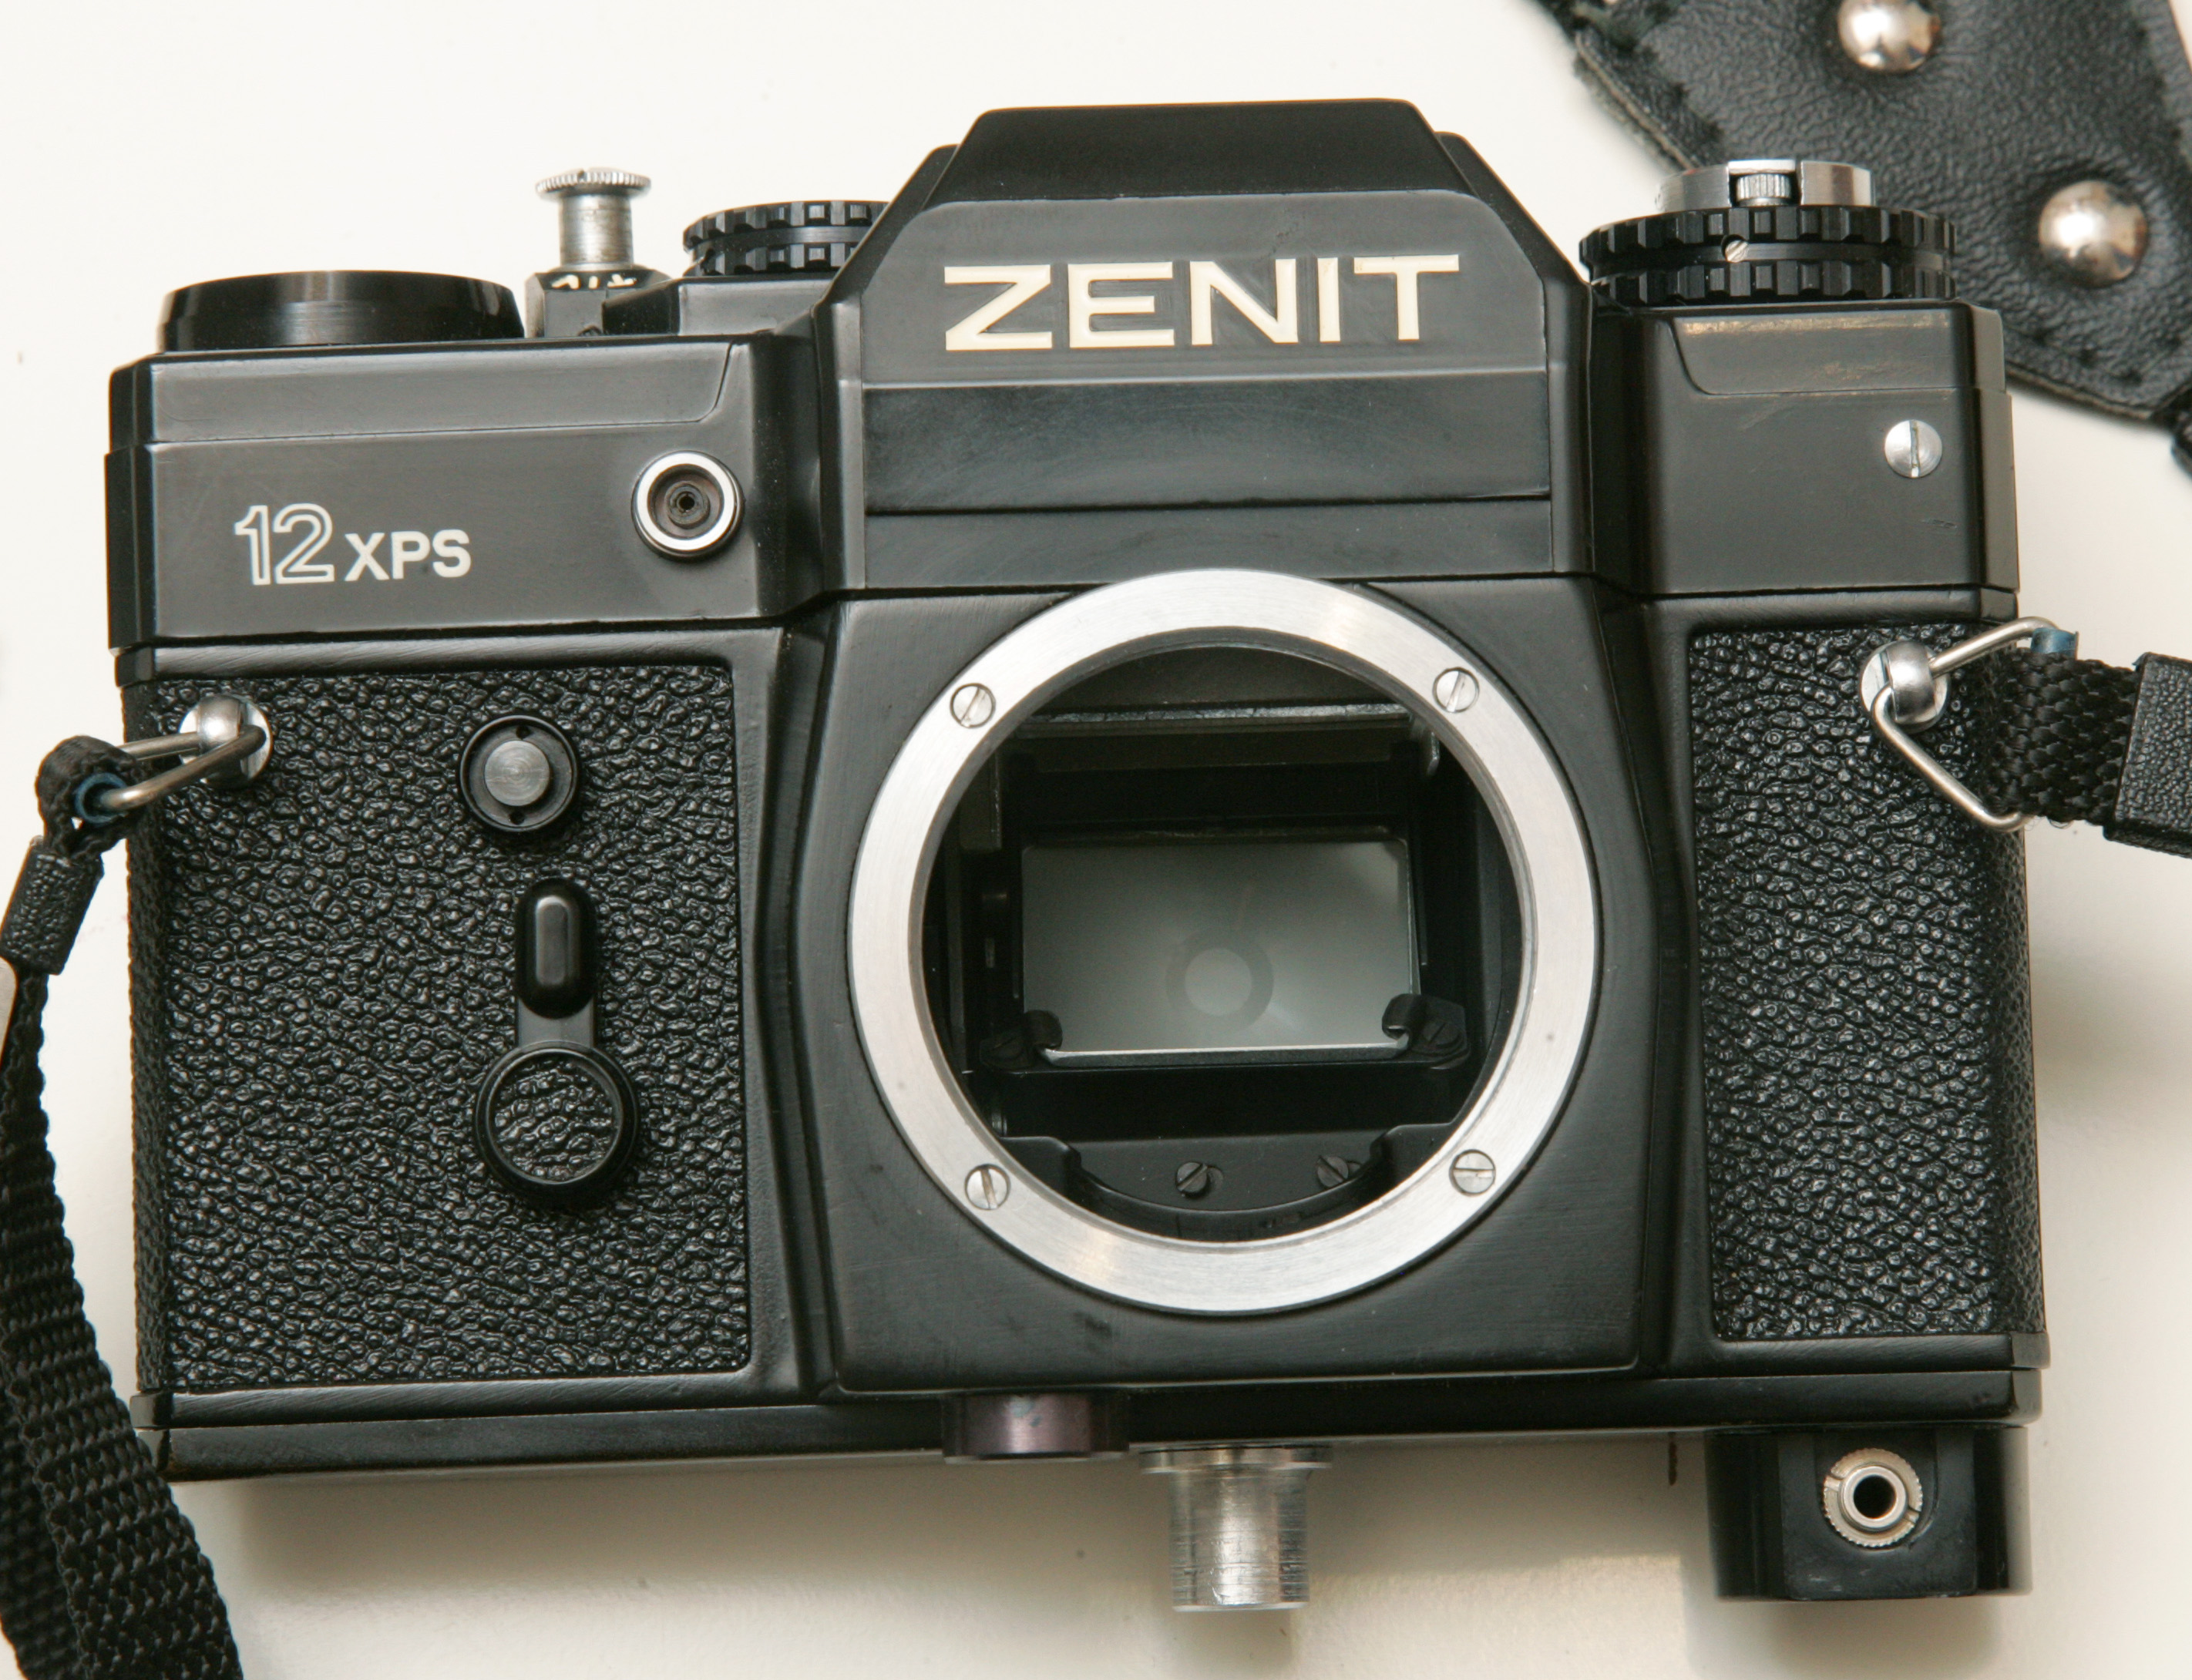 Zenit-12xps 2